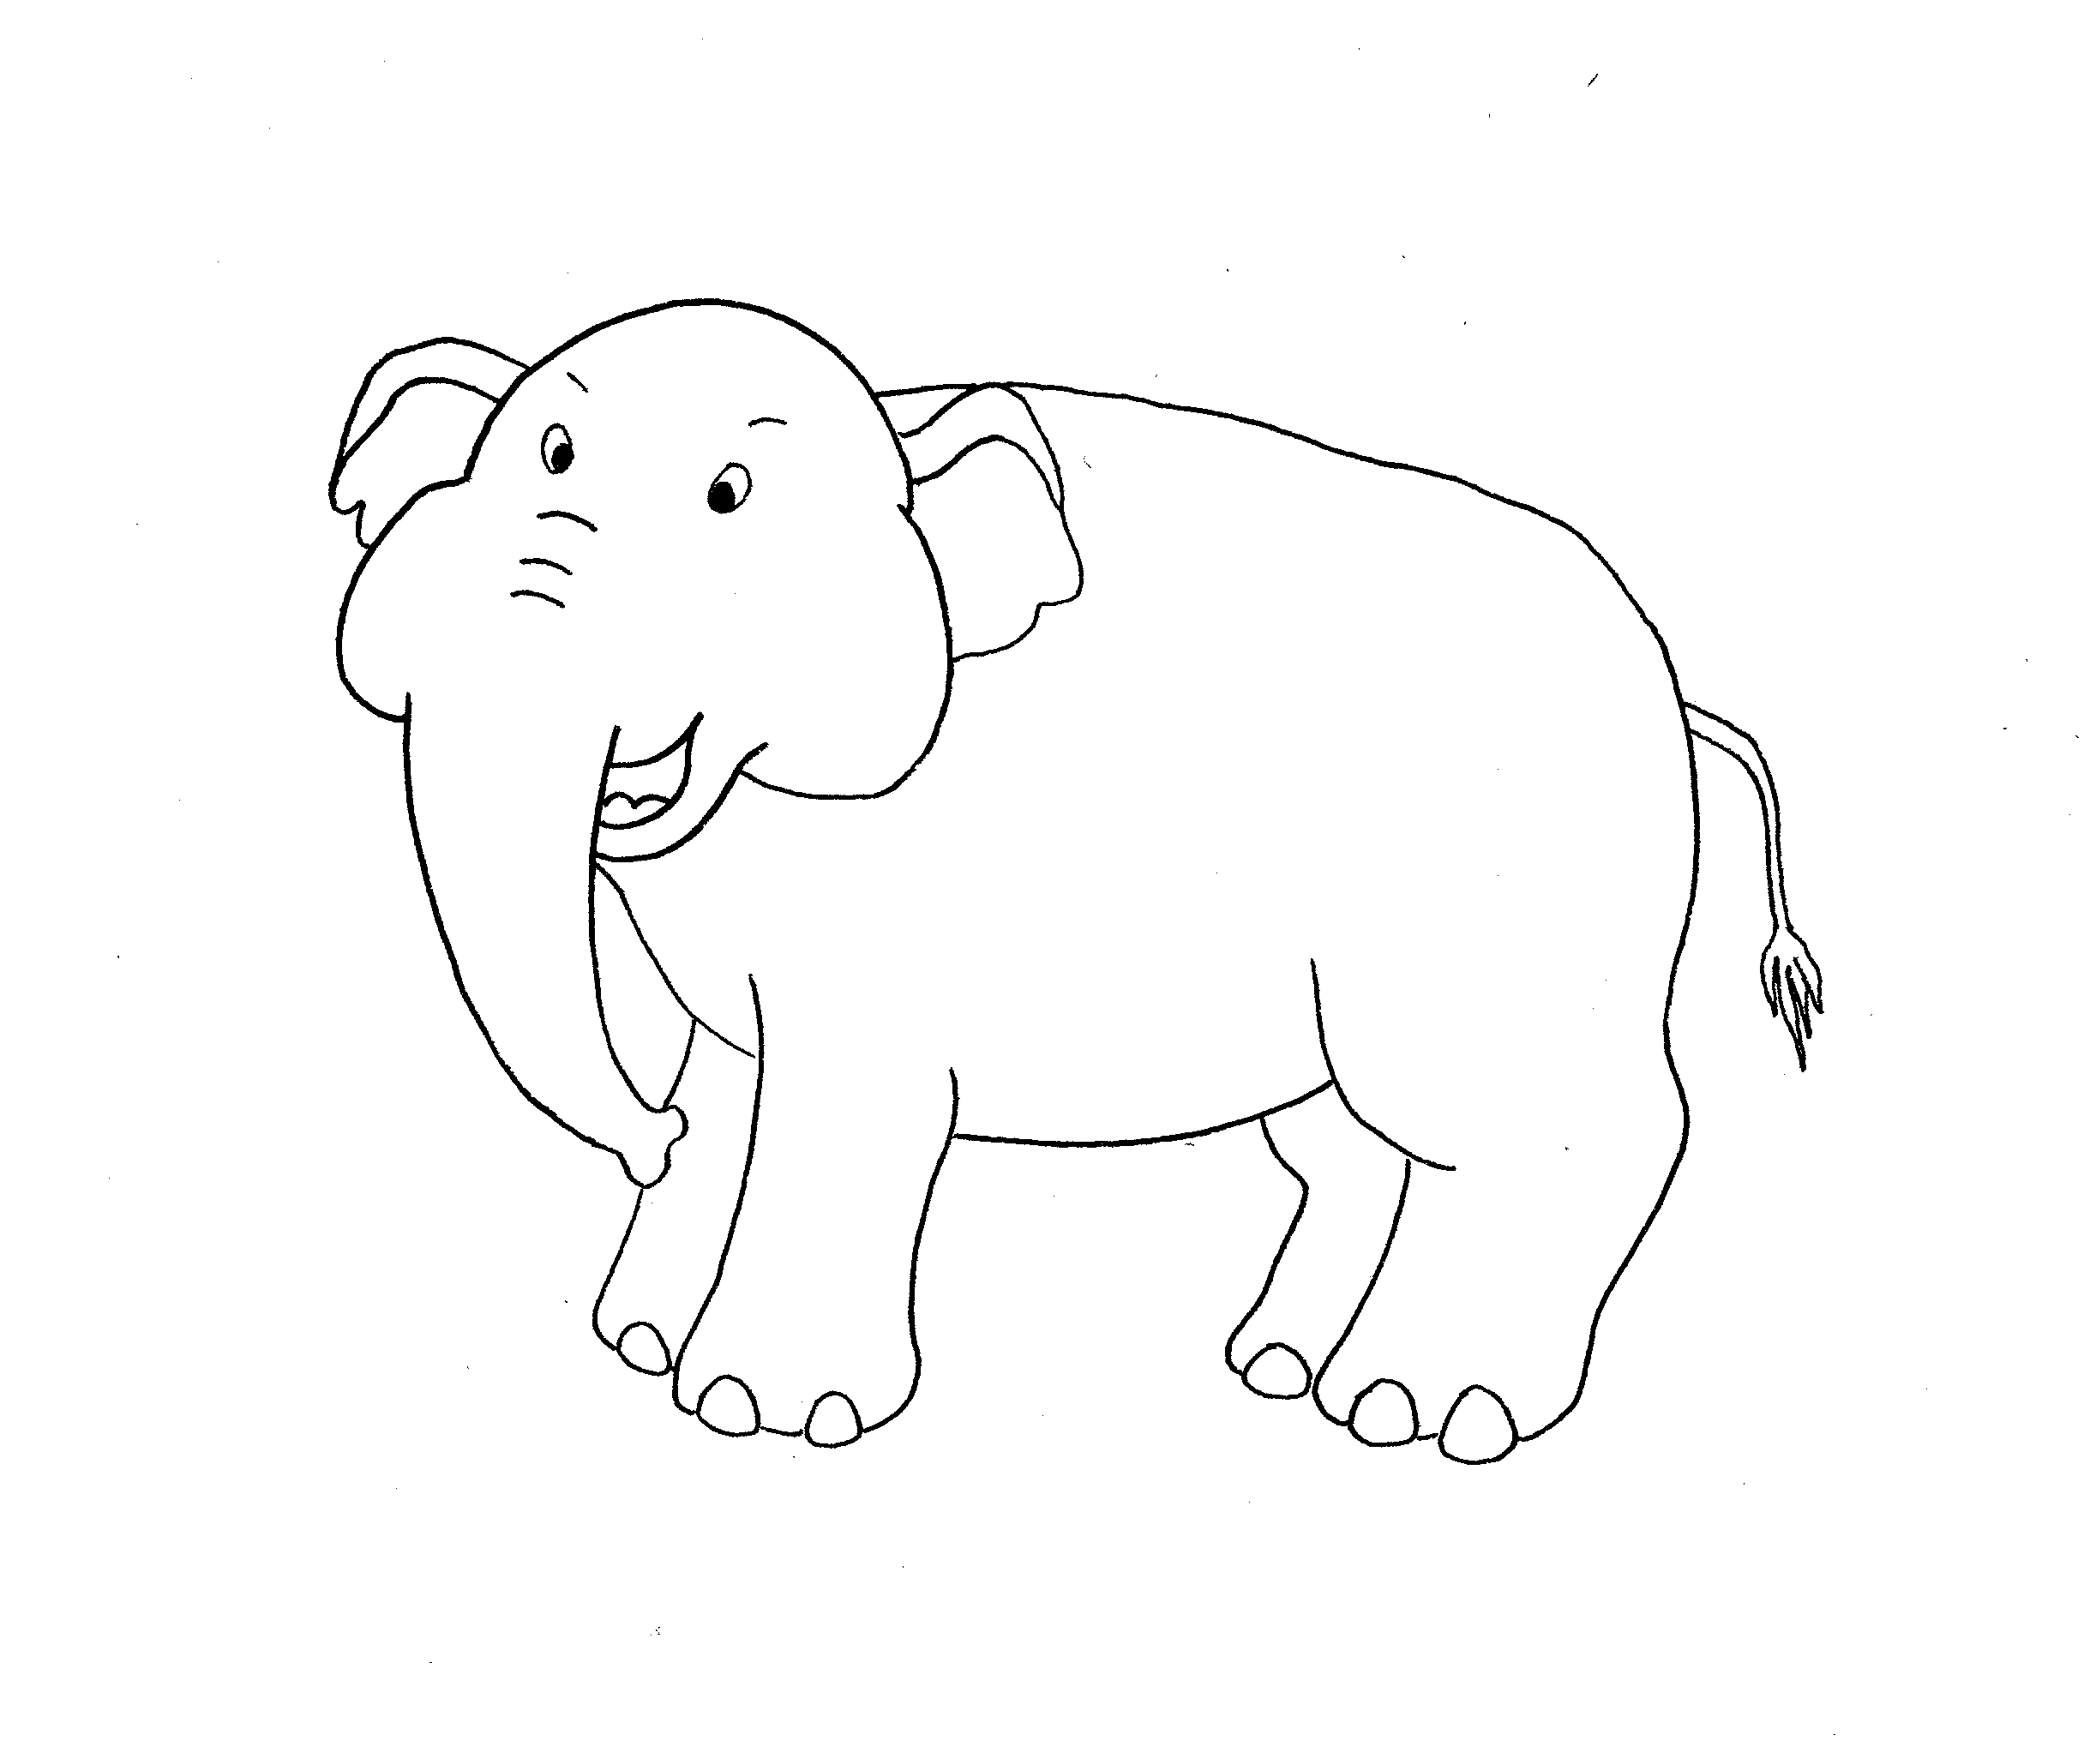 Grande semplice disegno da colorare di un elefante